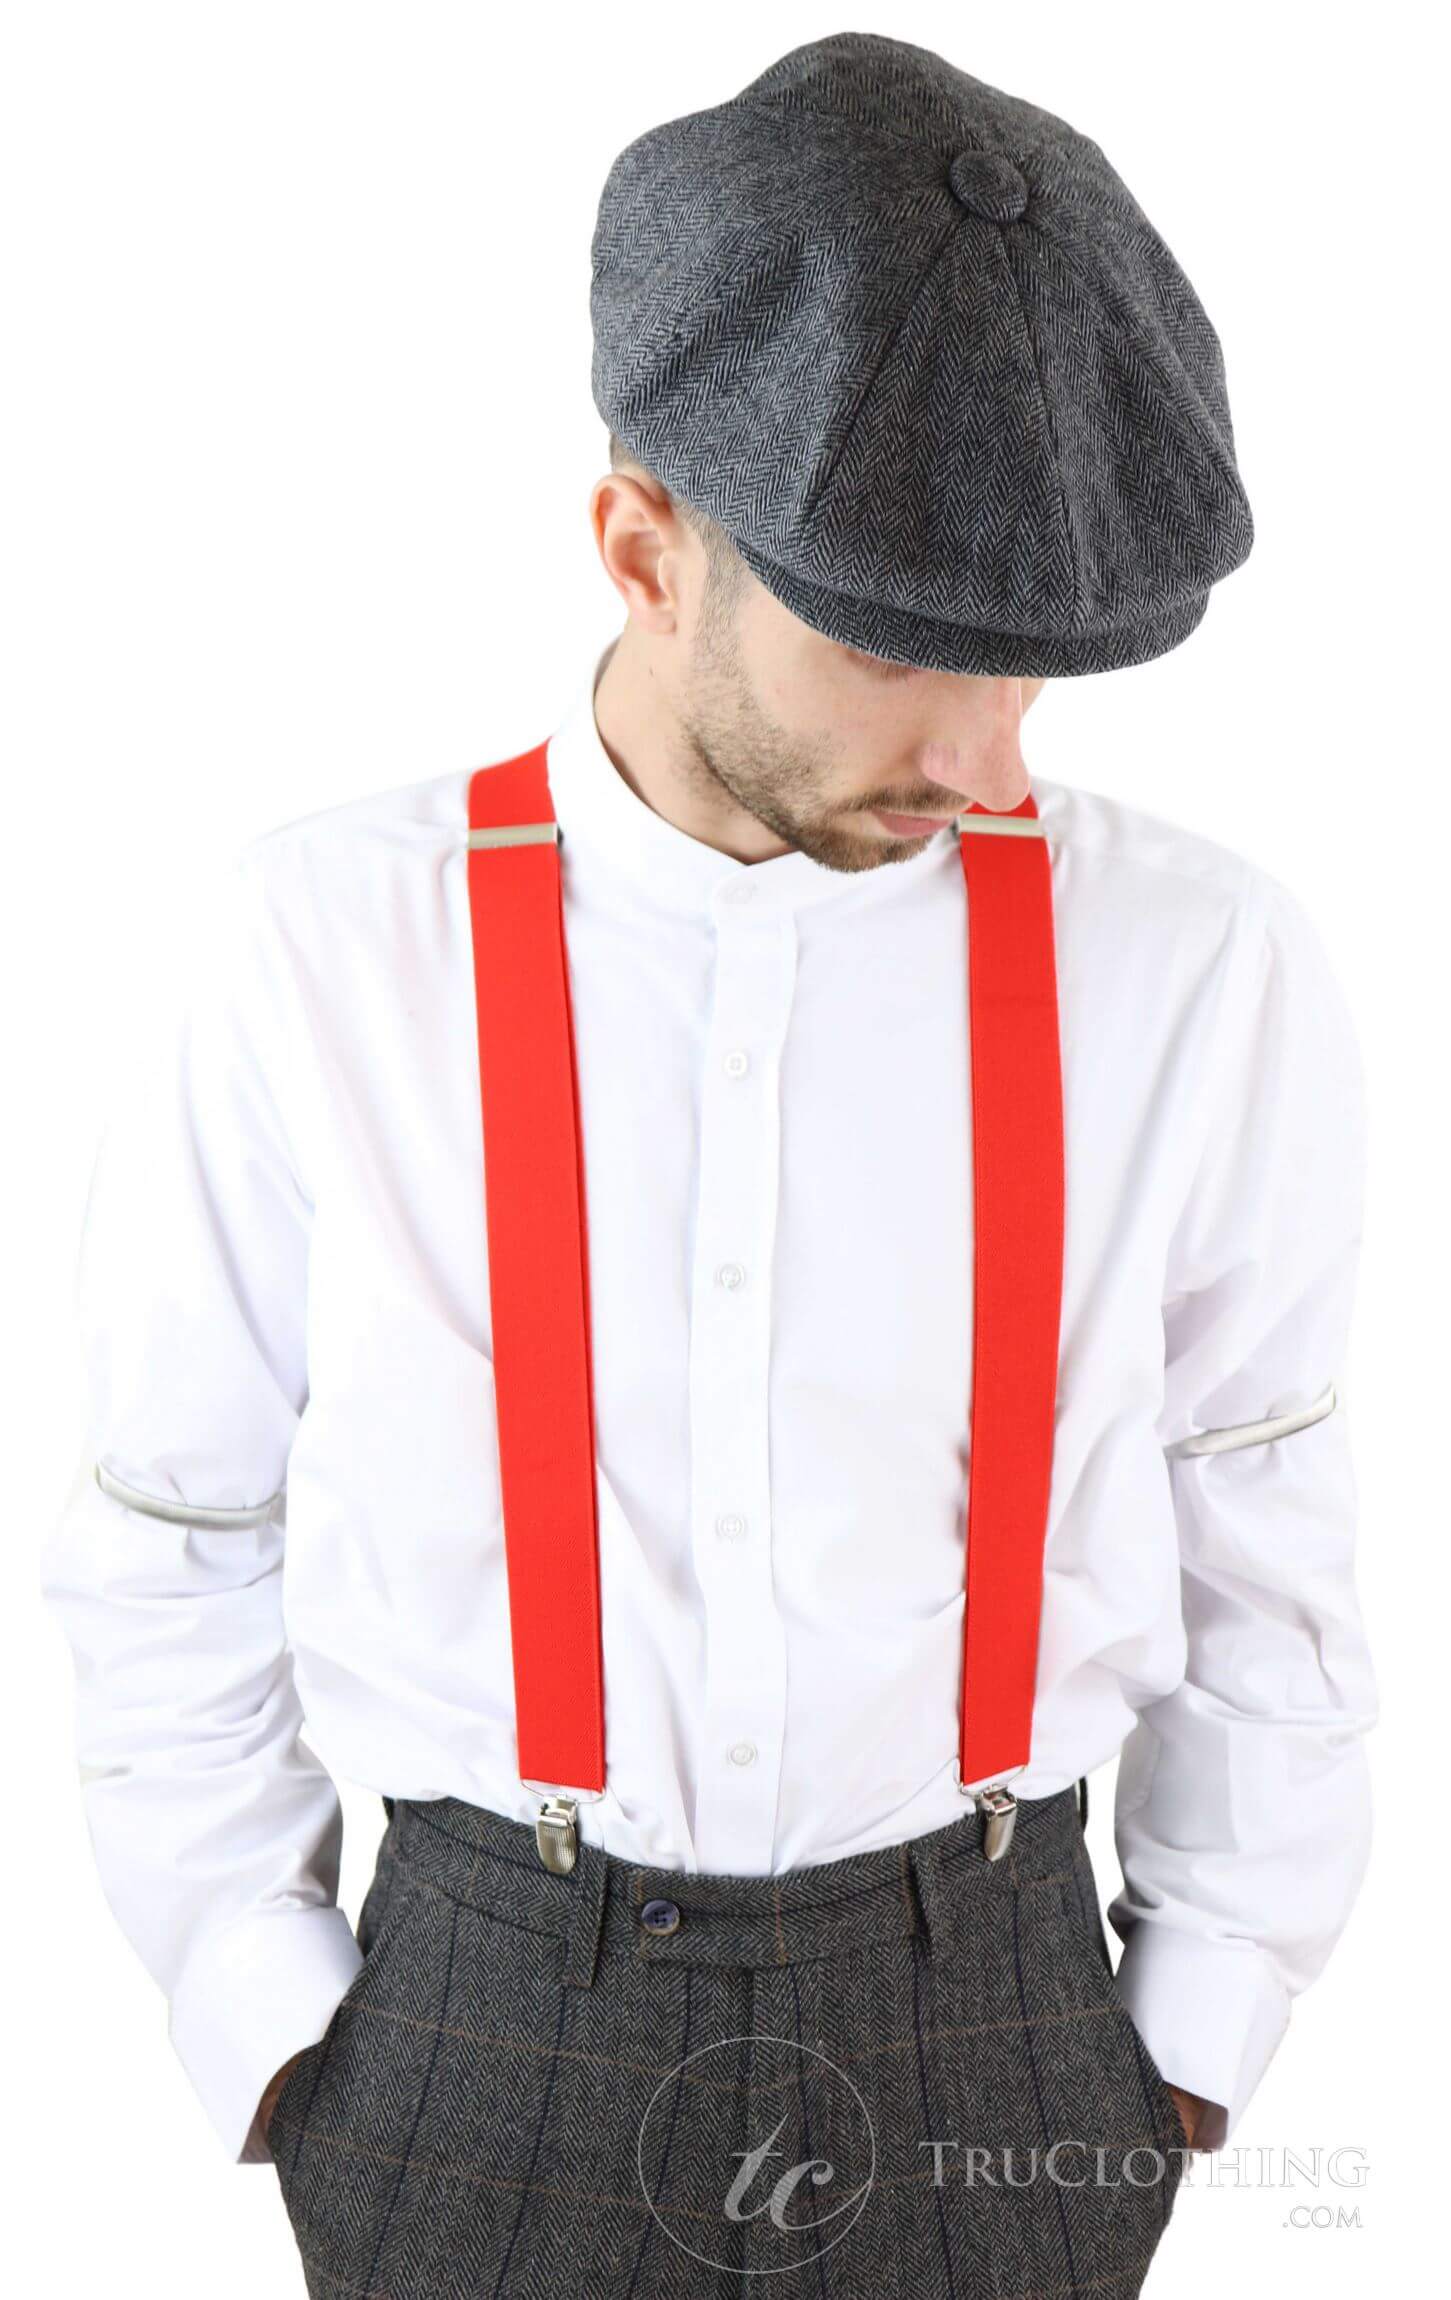 Skinny Orange Trouser Braces Elastic Suspenders Handmade in England  eBay